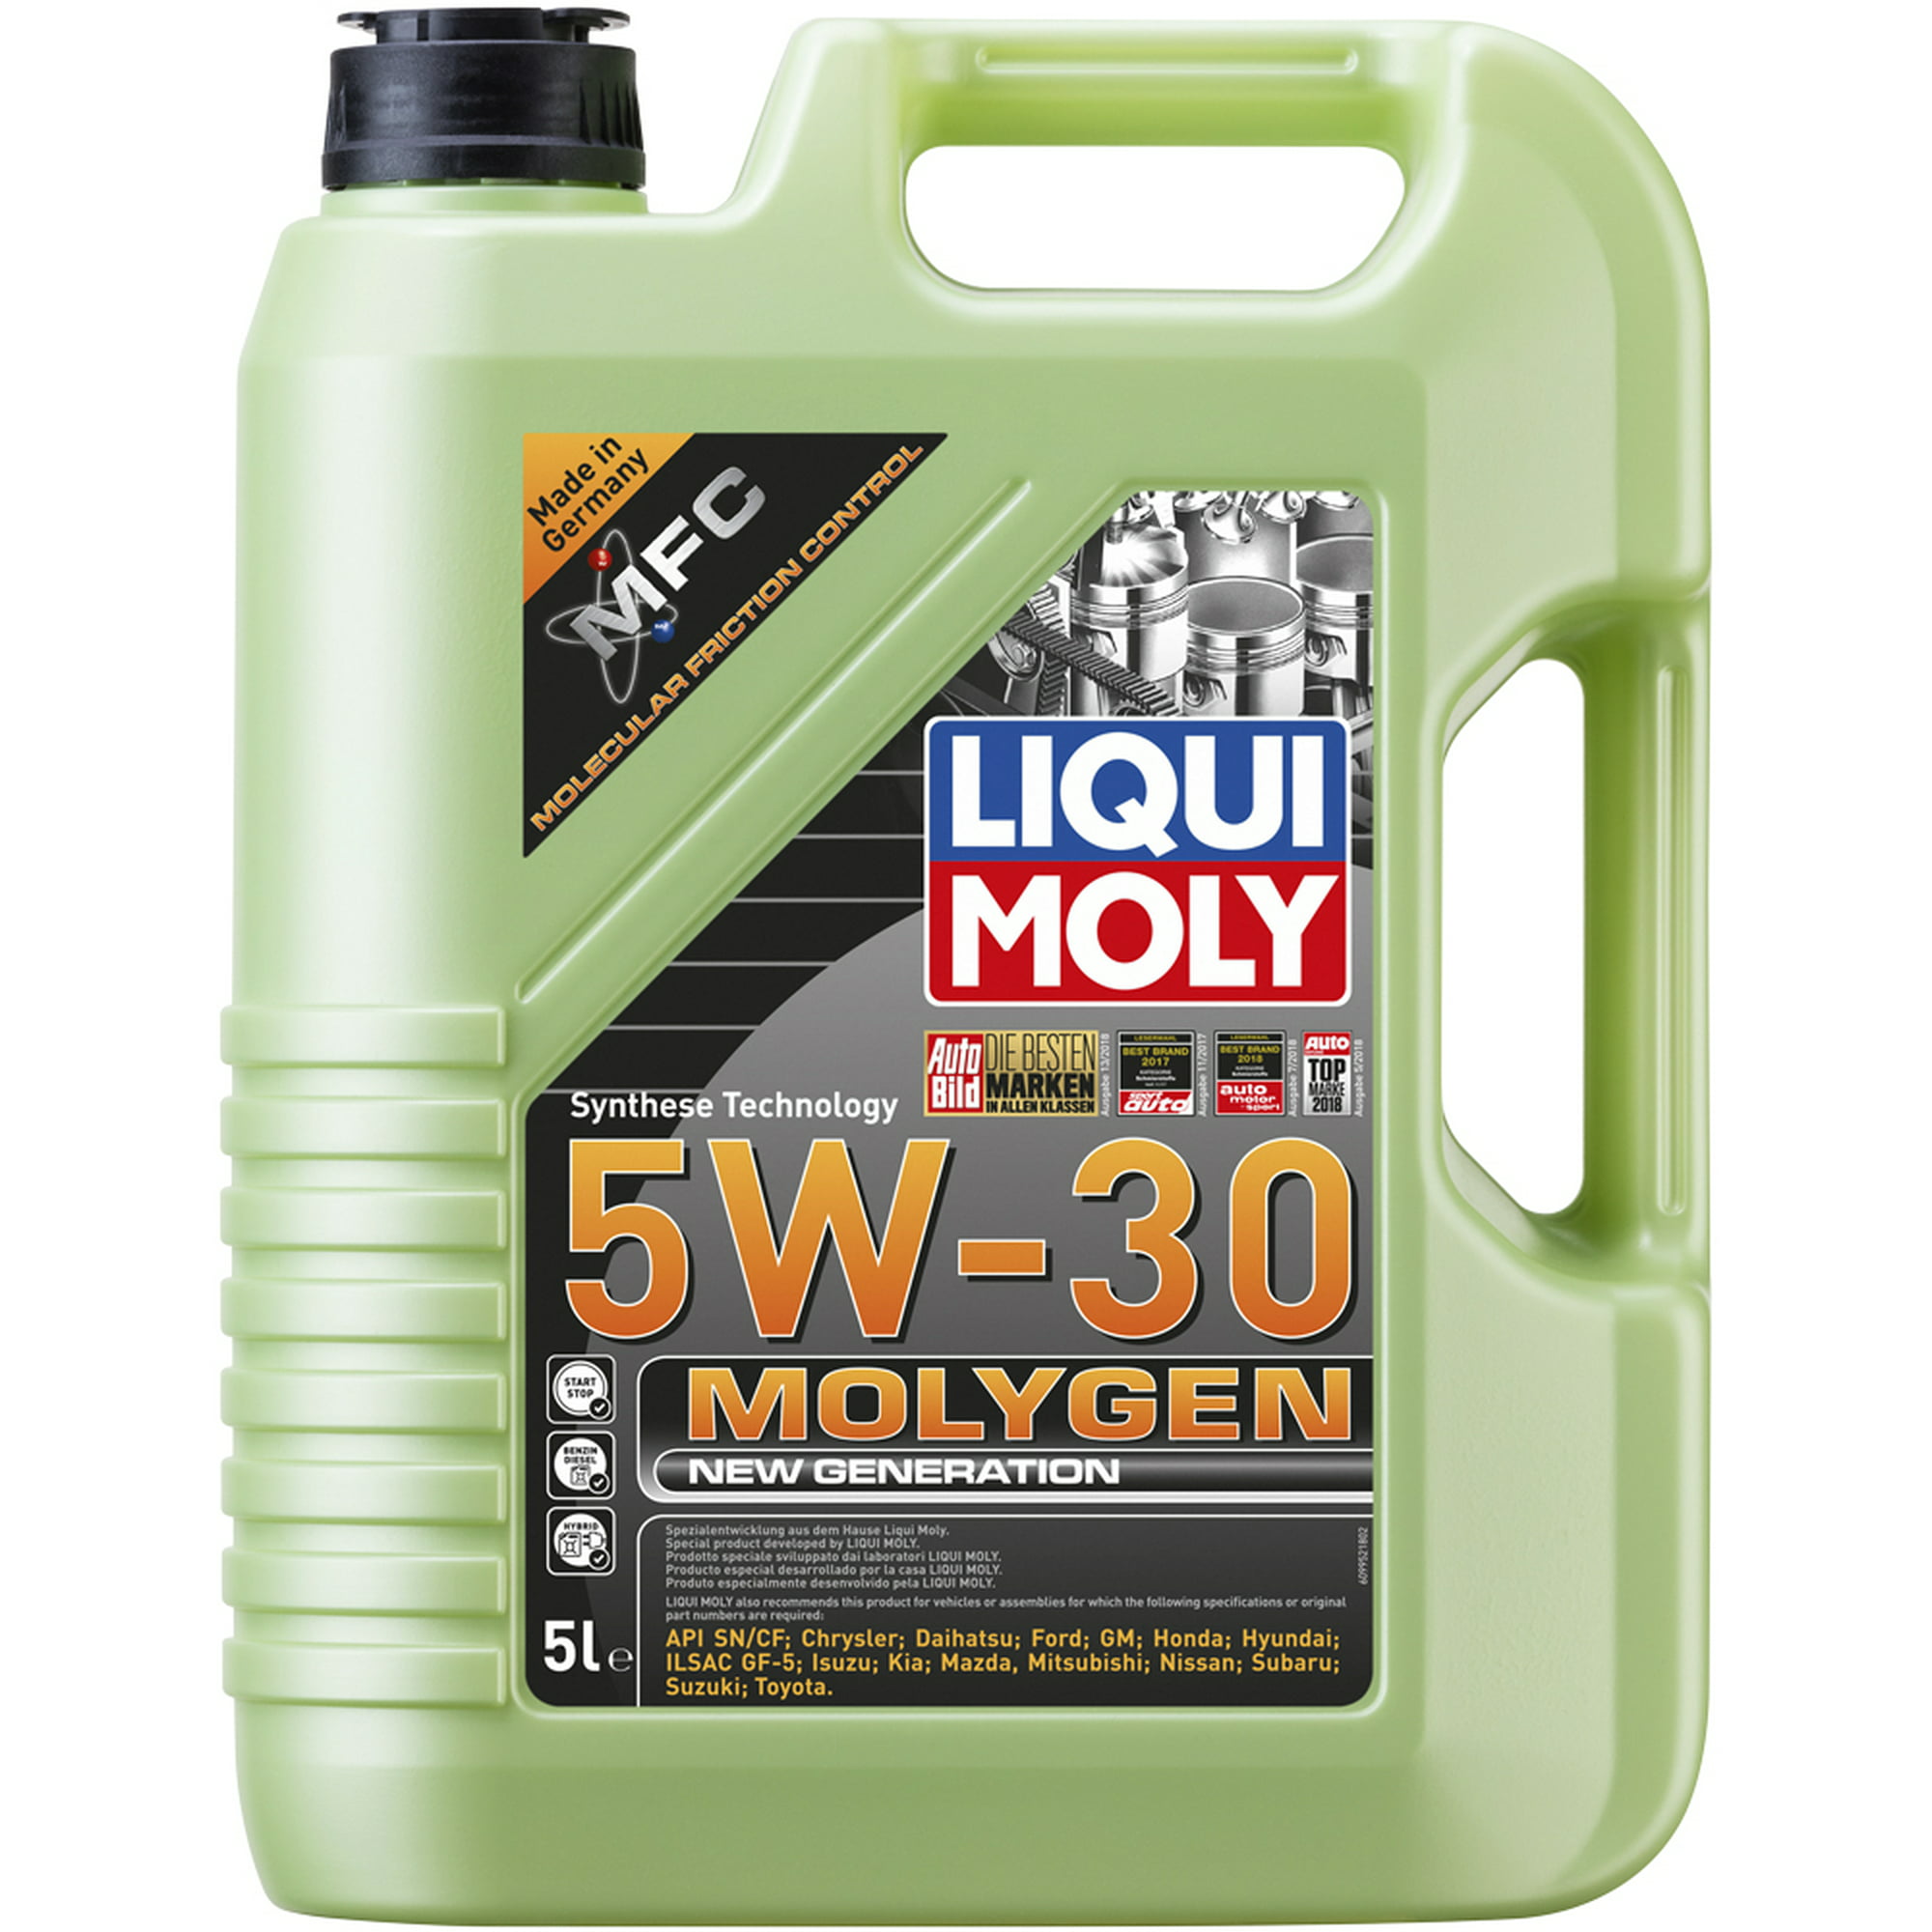 Molygen 5w30 5l aceite sintético antifriccionante tungsteno liqui moly .